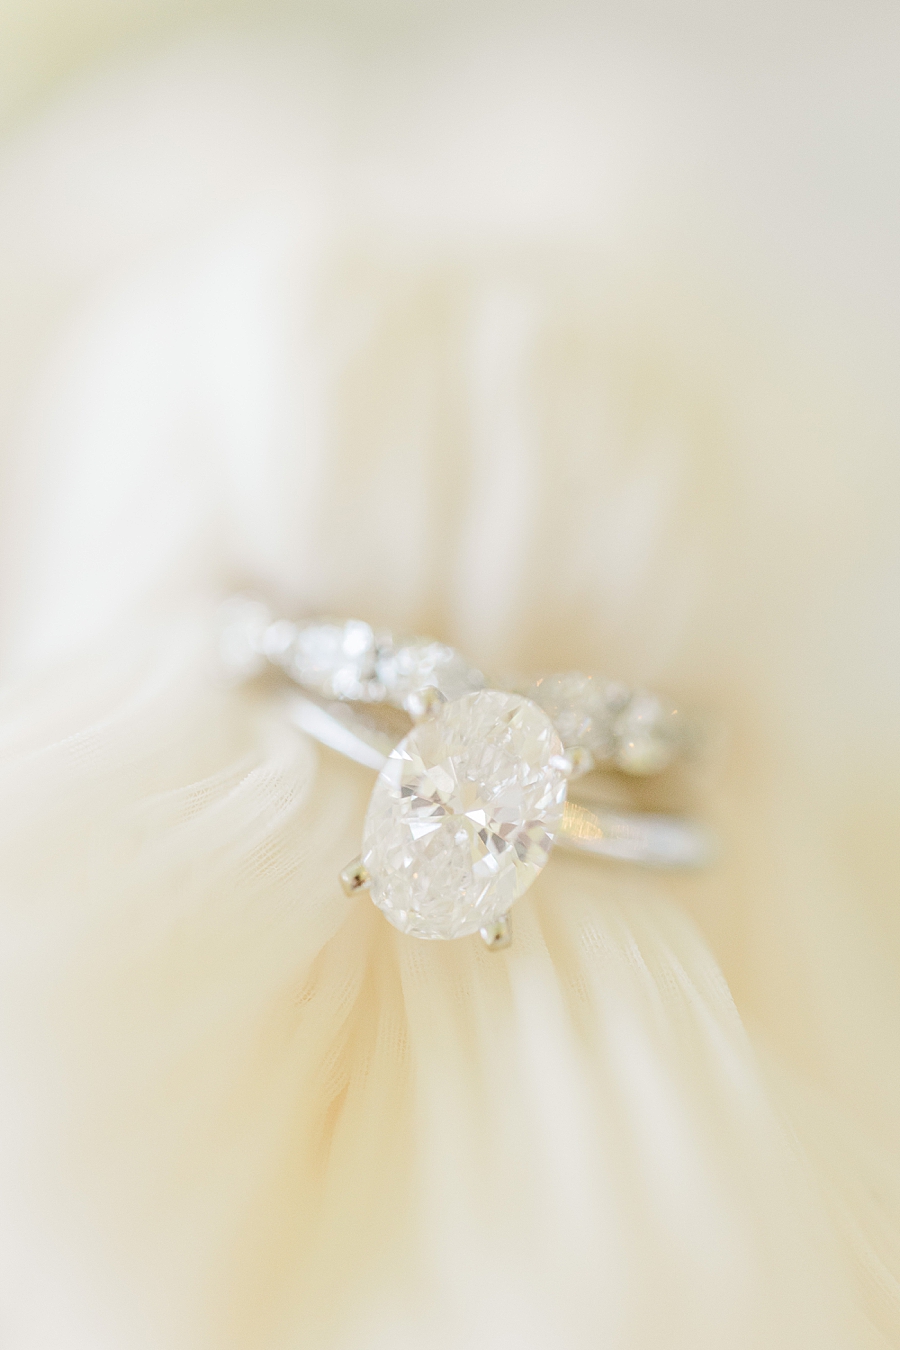 Rings  at Marblegate Wedding by Amanda May Photos